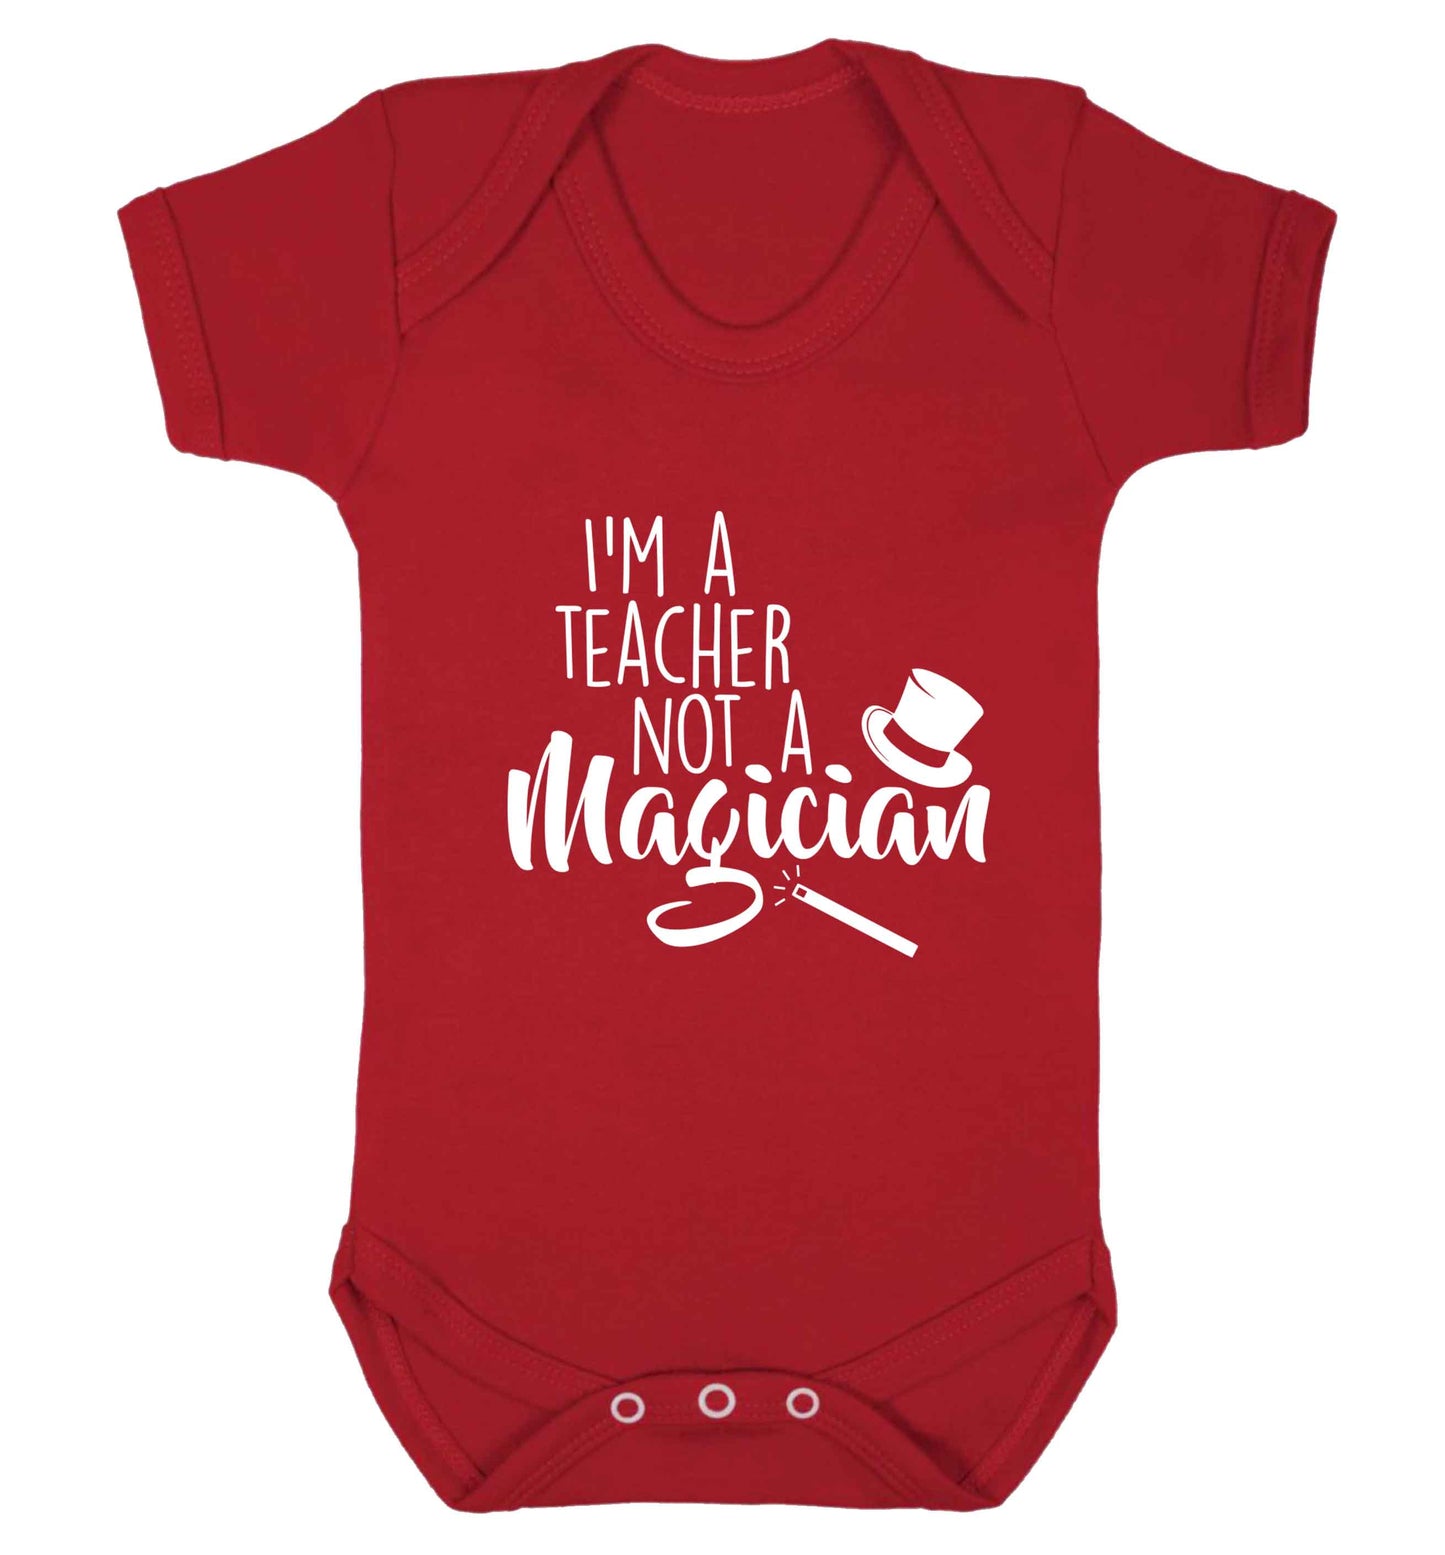 I'm a teacher not a magician baby vest red 18-24 months